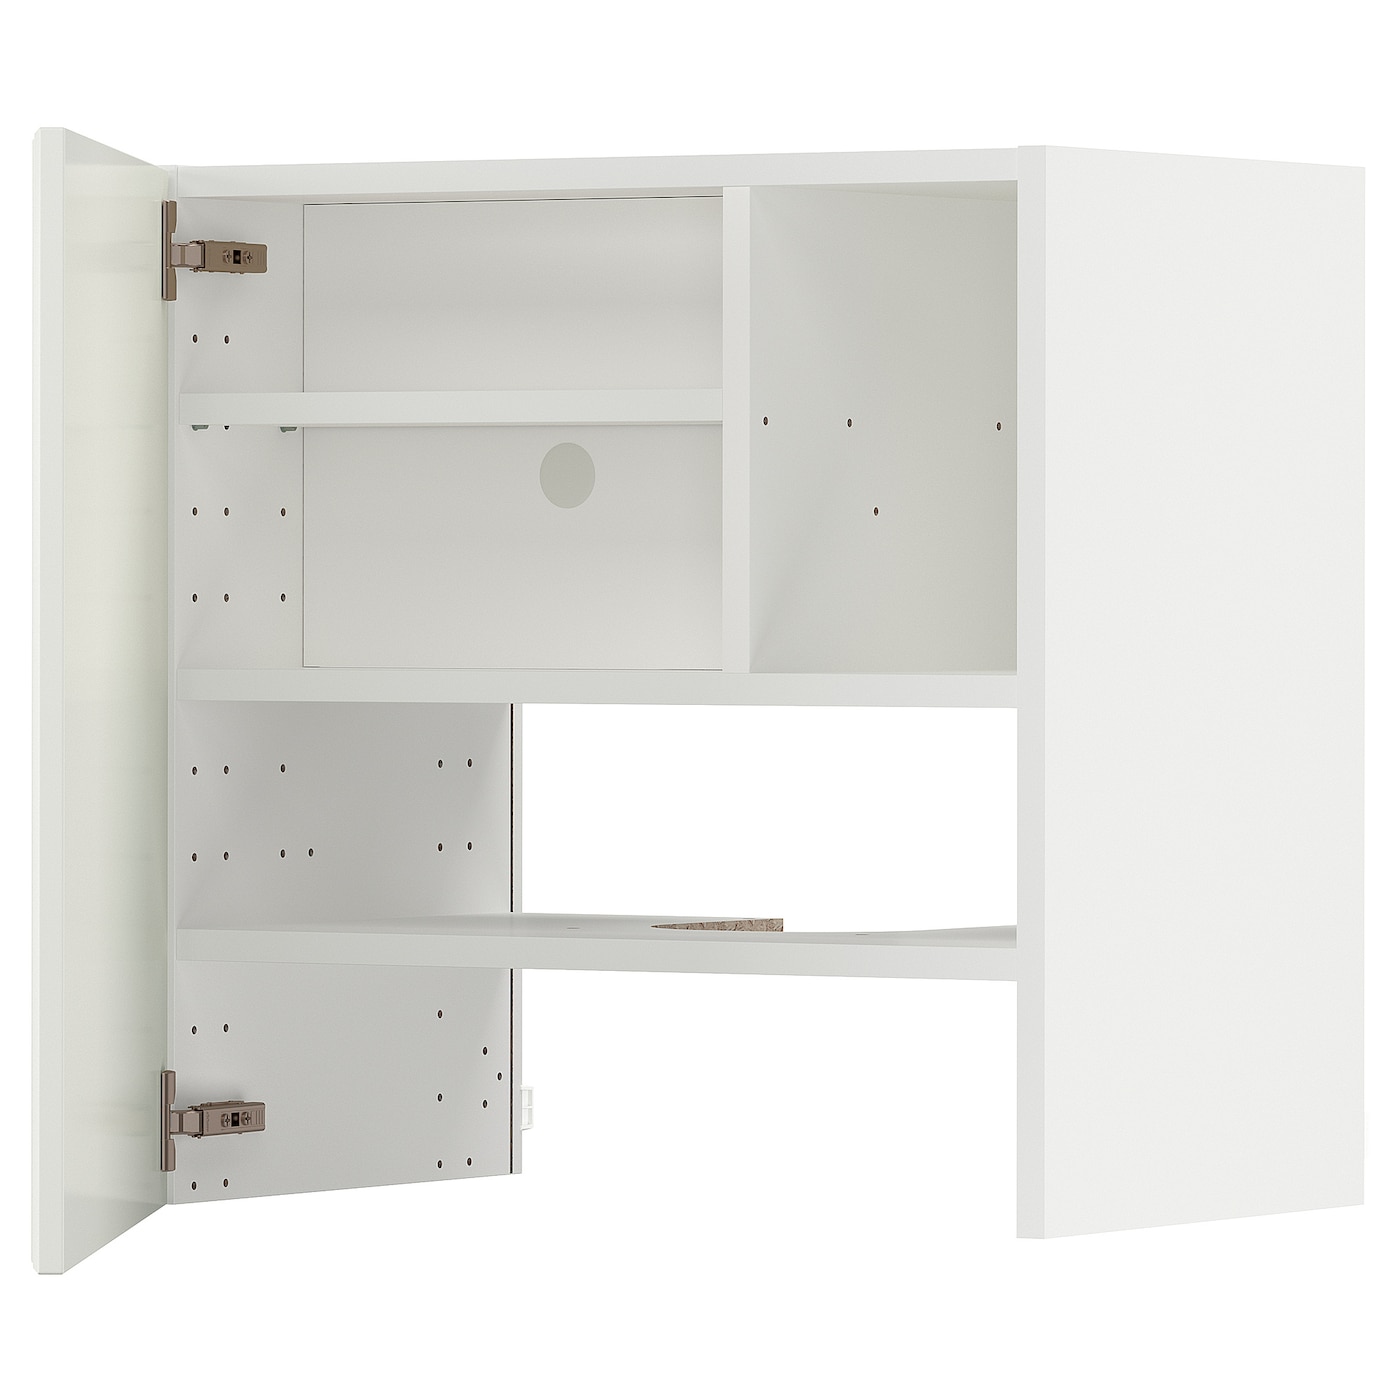 Навесной шкаф - METOD IKEA/ МЕТОД ИКЕА, 60х60 см, белый/кремовый